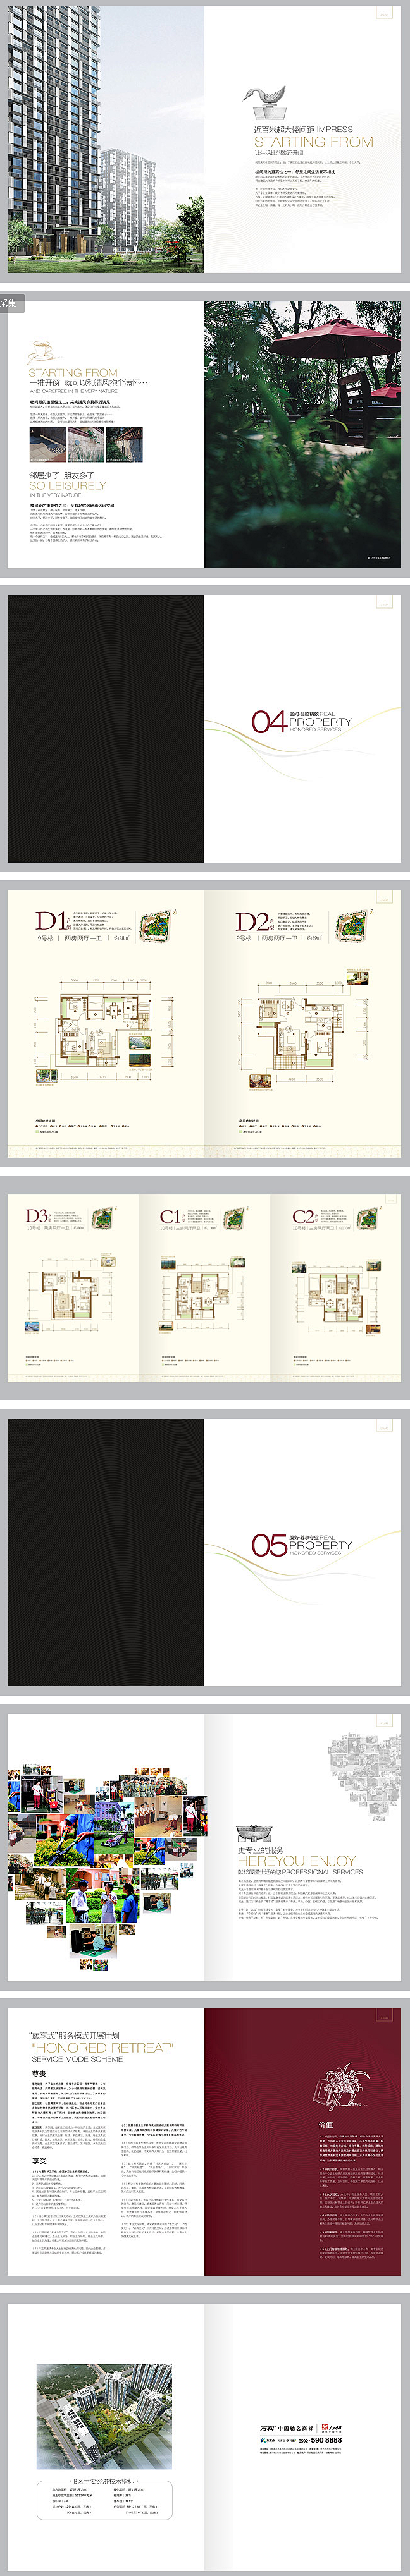 企业画册设计|产品画册设计|高端画册设计...